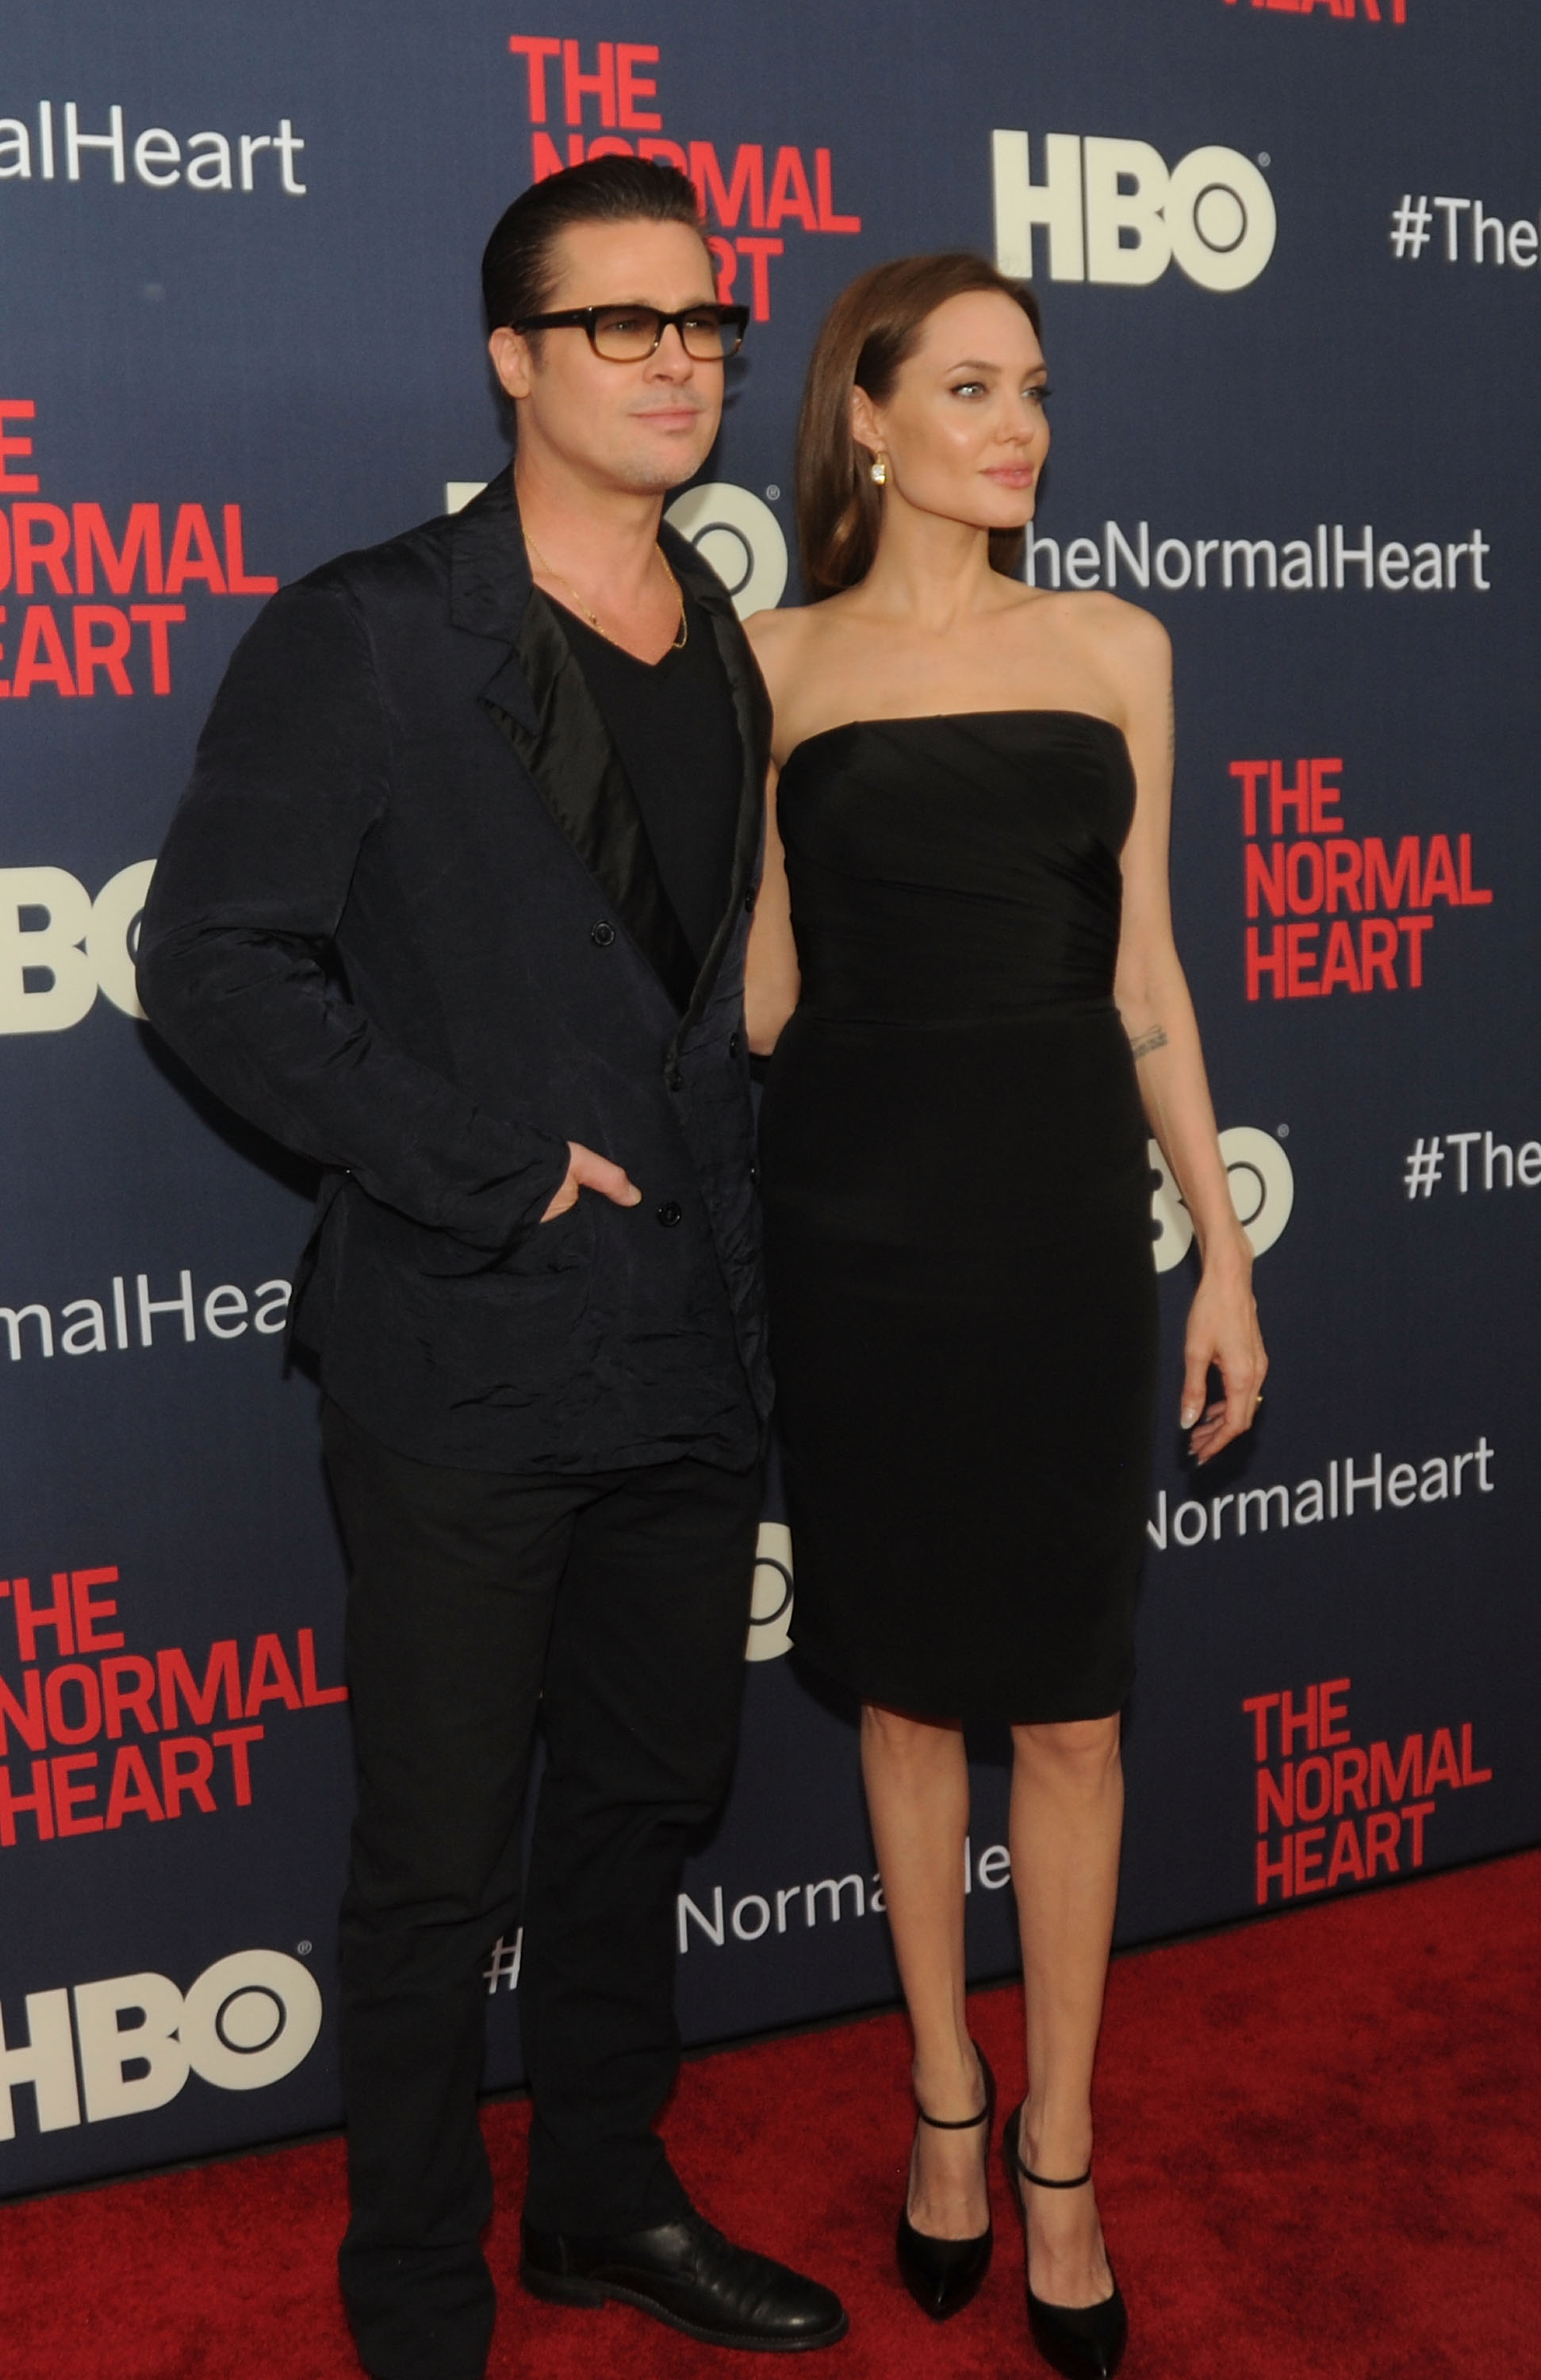 Brad Pitt et Angelina Jolie assistent à la projection de "The Normal Heart" au théâtre Ziegfeld à New York, le 12 mai 2014. | Source : Getty Images